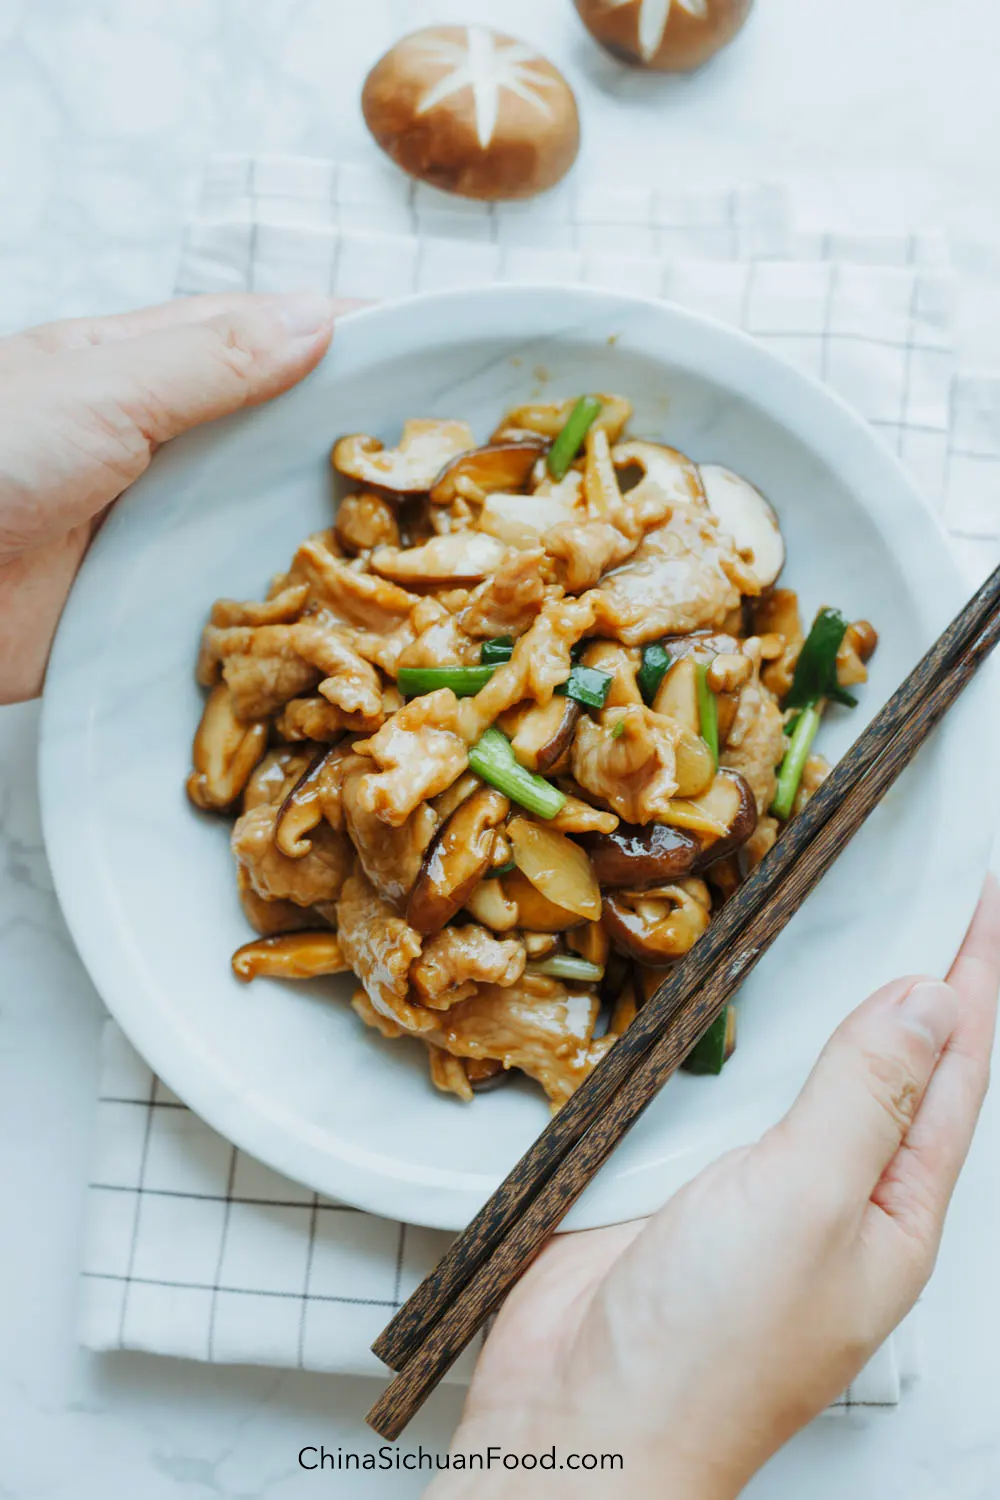 pork and mushroom stir fry|chinasichuanfood.com